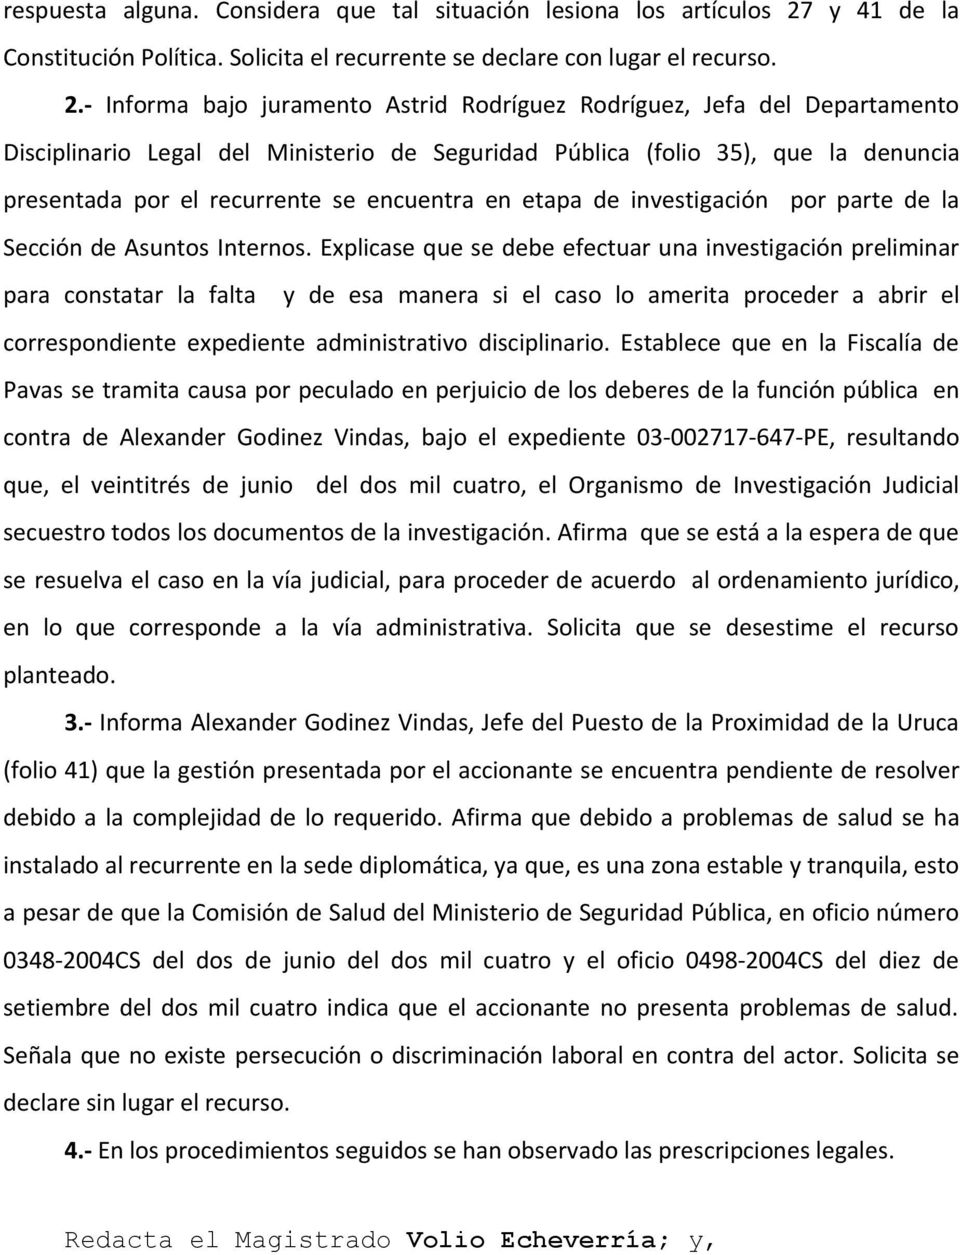 - Informa bajo juramento Astrid Rodríguez Rodríguez, Jefa del Departamento Disciplinario Legal del Ministerio de Seguridad Pública (folio 35), que la denuncia presentada por el recurrente se